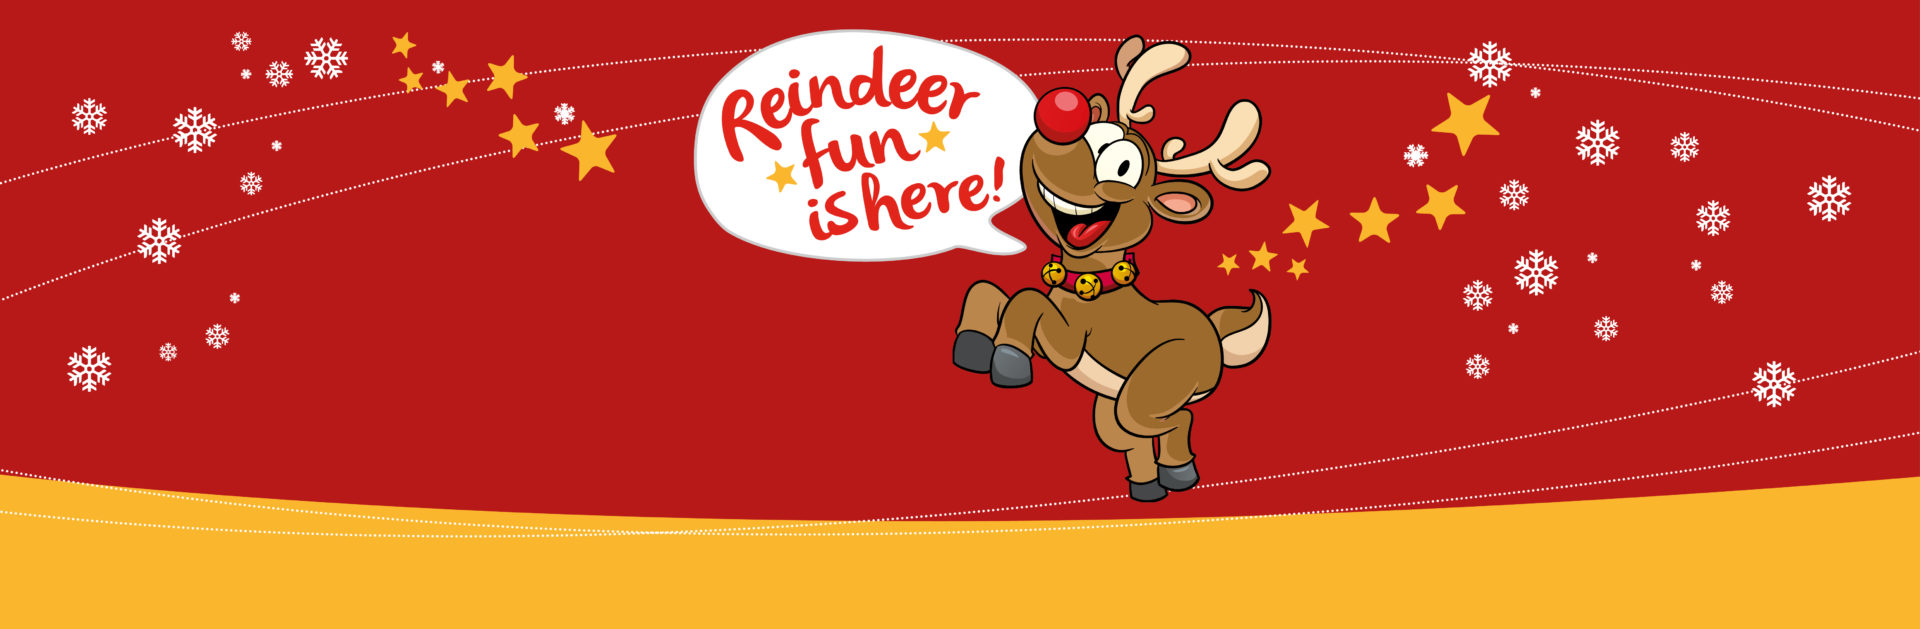 Reindeer Fun hero image